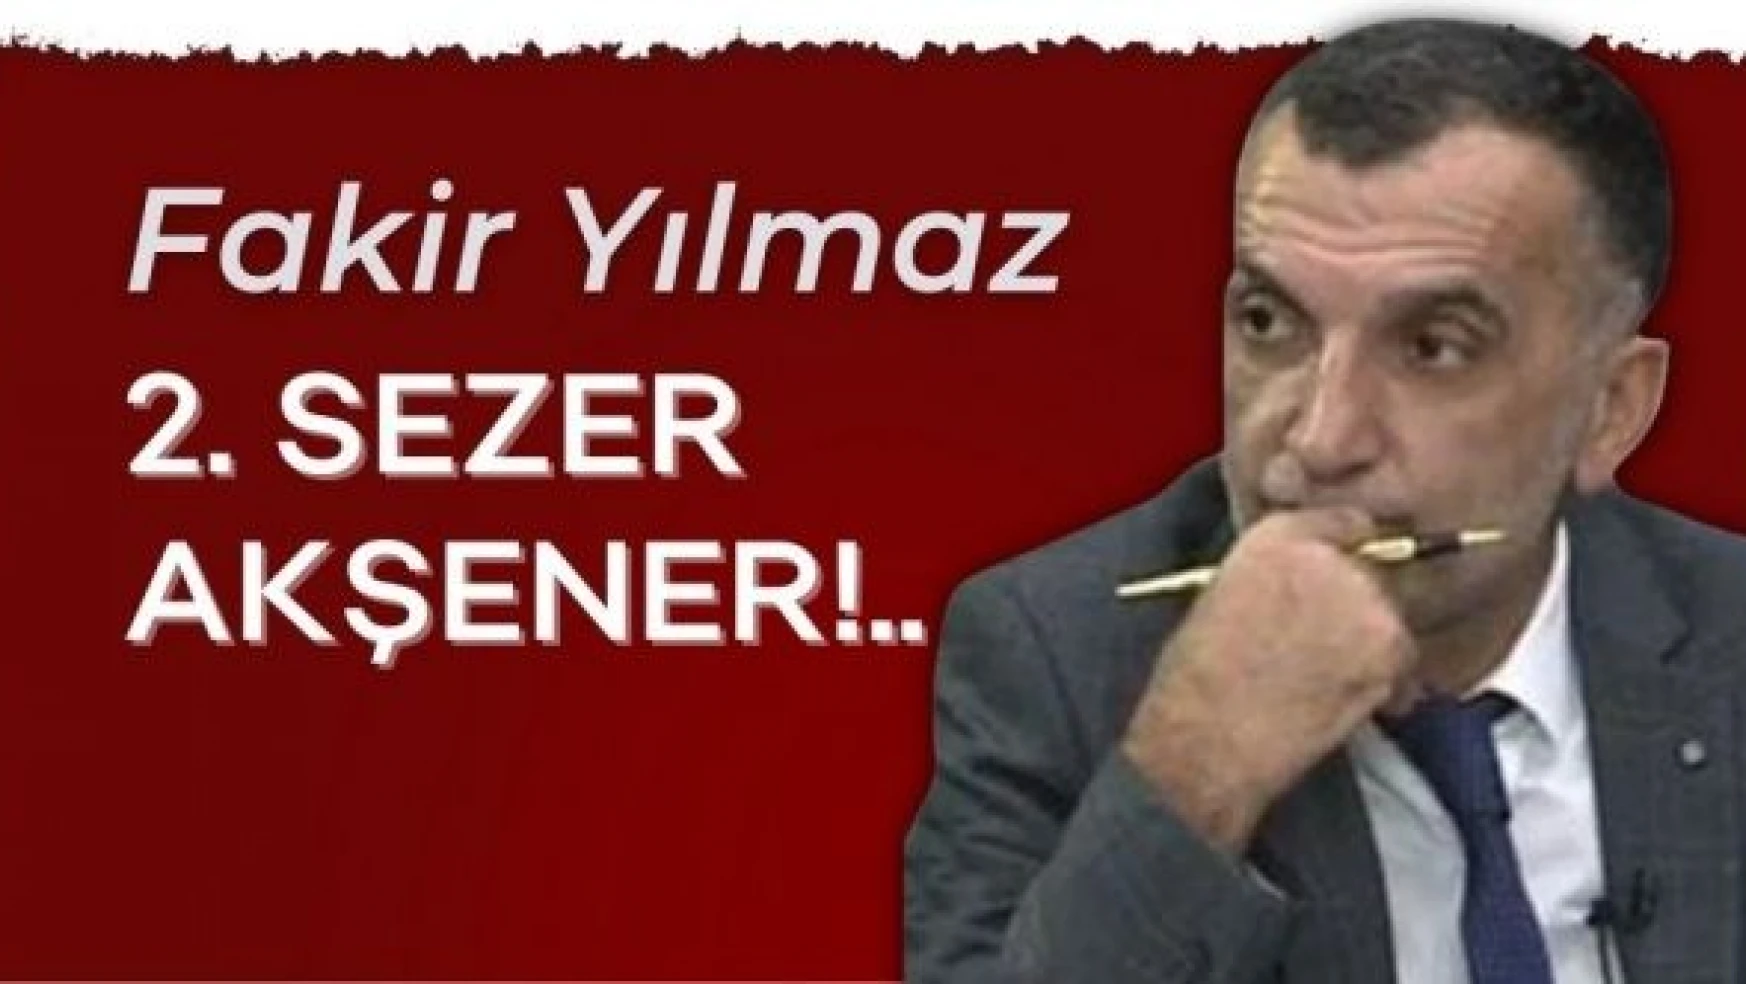 Gazeteci Fakir Yılmaz yazdı... 'ƈ. Sezer Akşener!..''